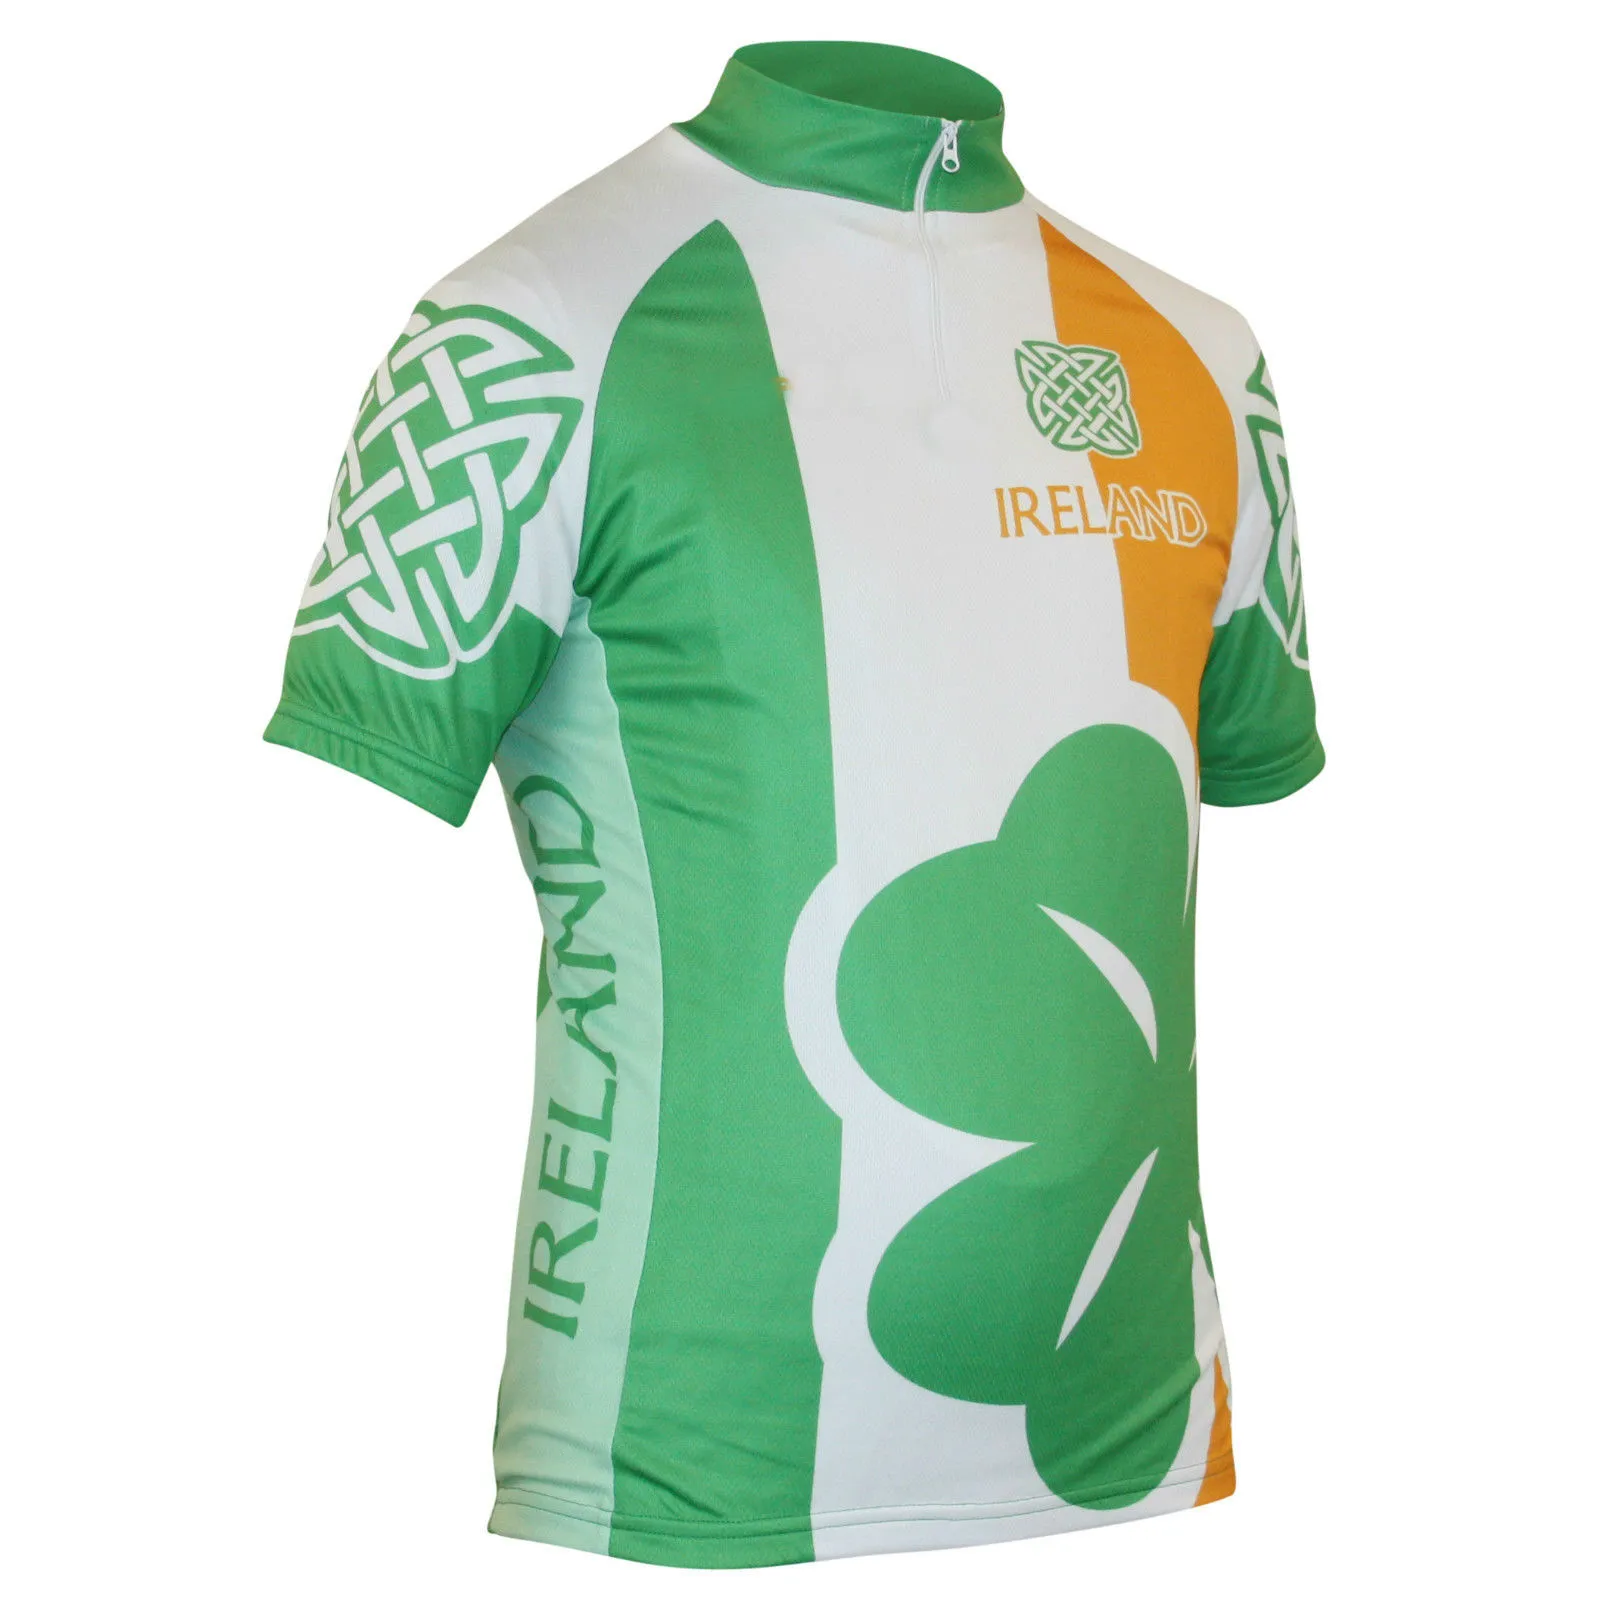 2022 National Scotland Wales Ireland w Anglii Jersey Oddychane koszulki rowerowe Krótkie rękawie Summer Quick Dry Cloth Mtb Ropa CI270G